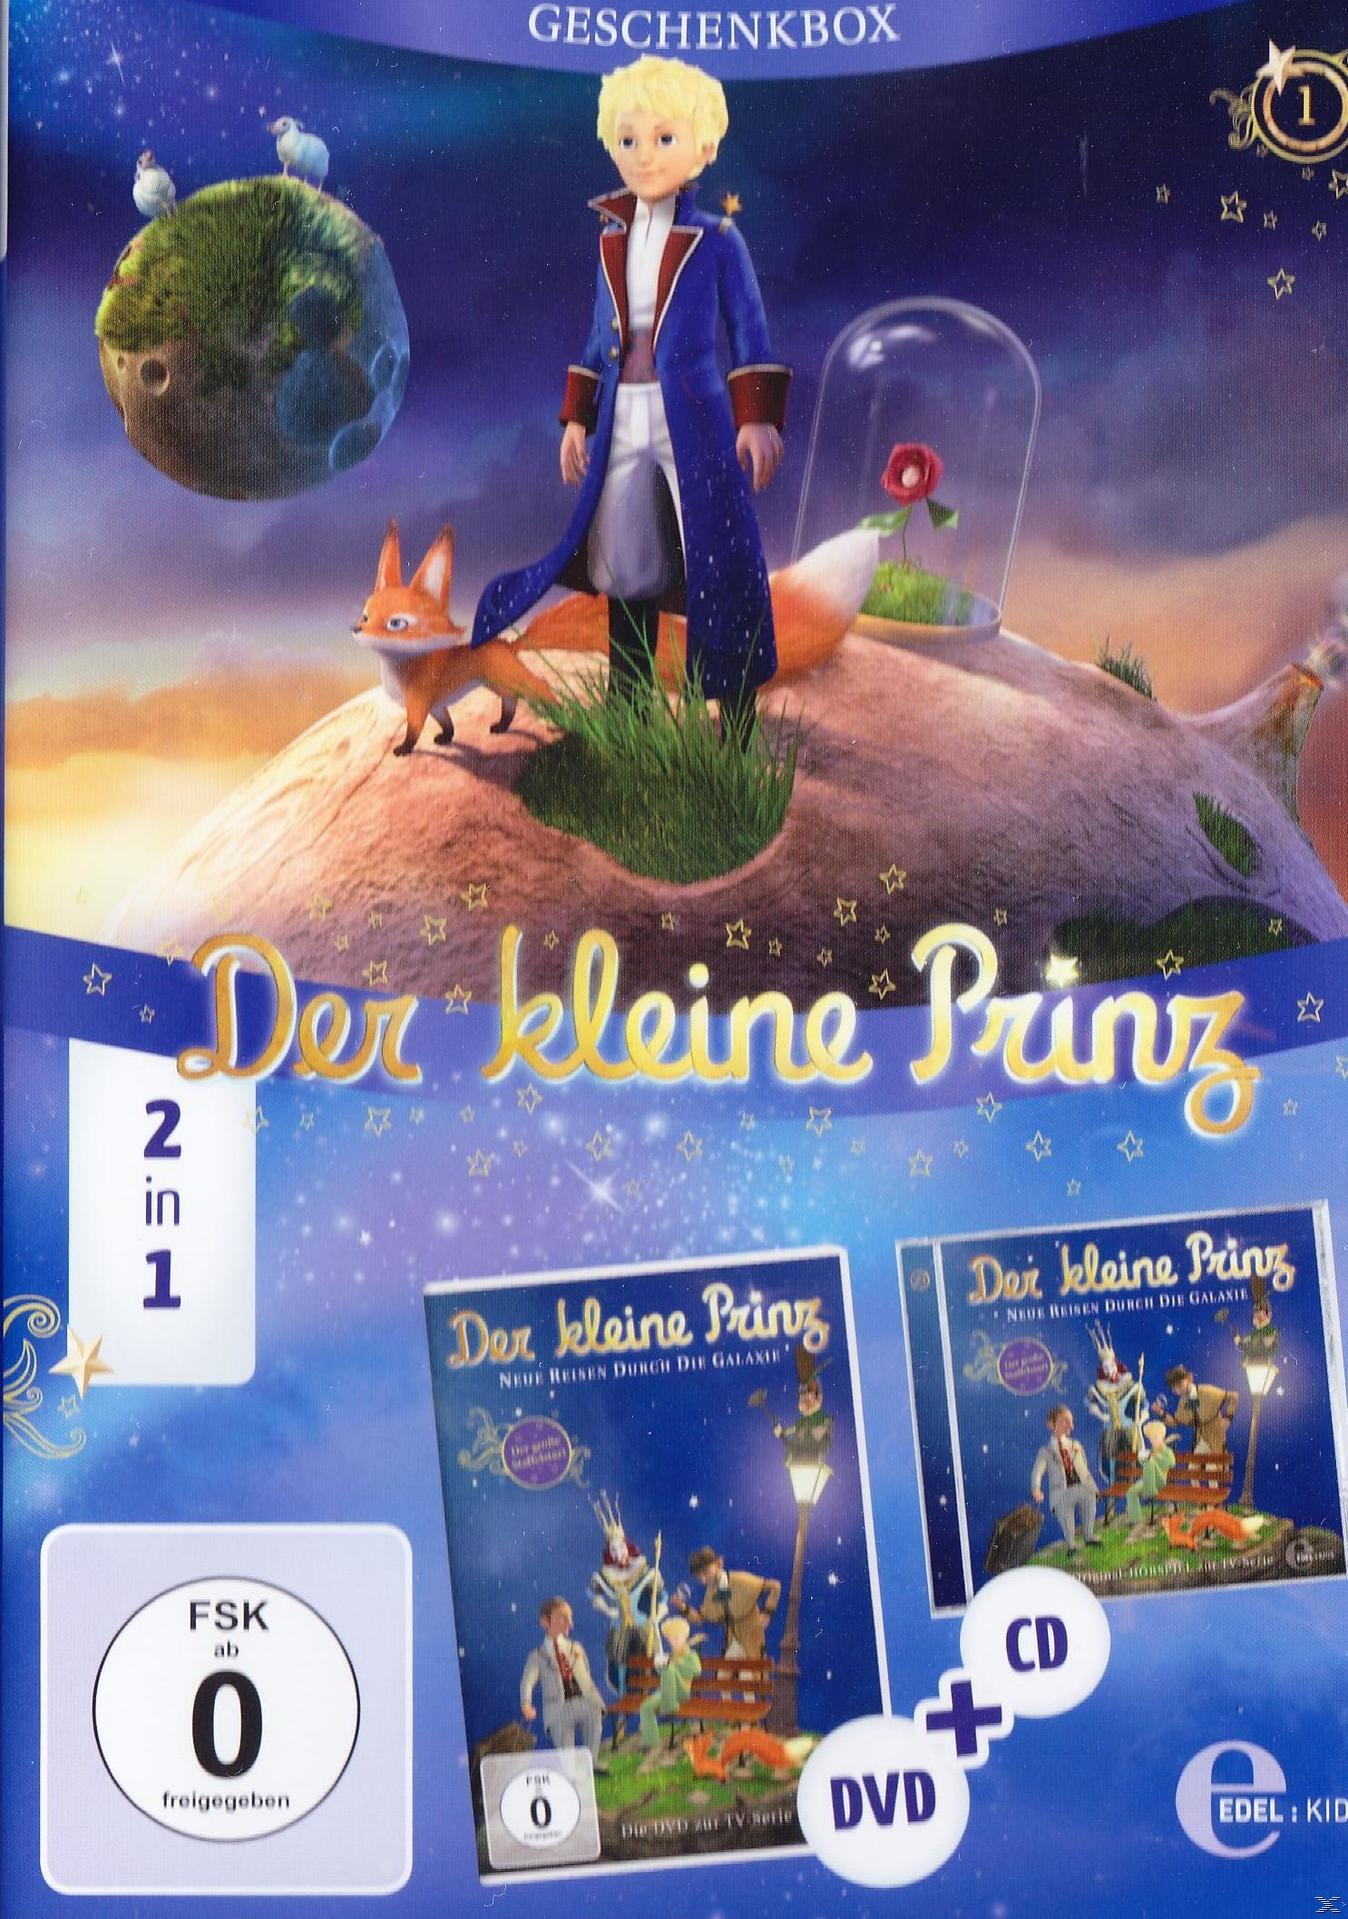 Der kleine Prinz 2in1 DVD + Geschenkbox) durch die Reisen Galaxie Neue - (Exklusive CD